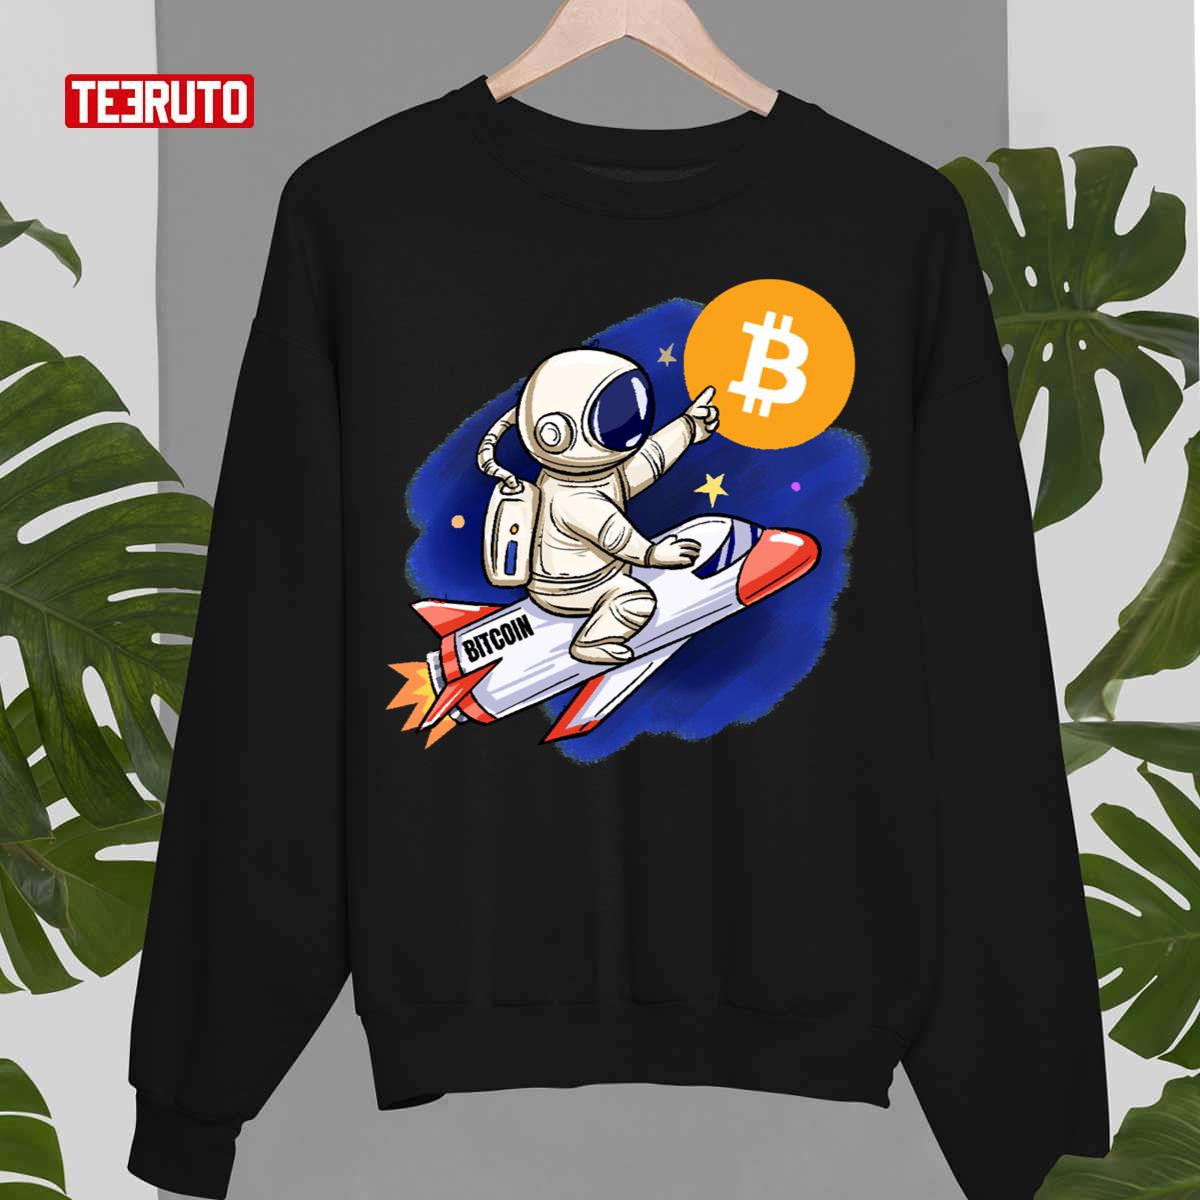 Bitcoin Astronaut Unisex T-Shirt - Teeruto